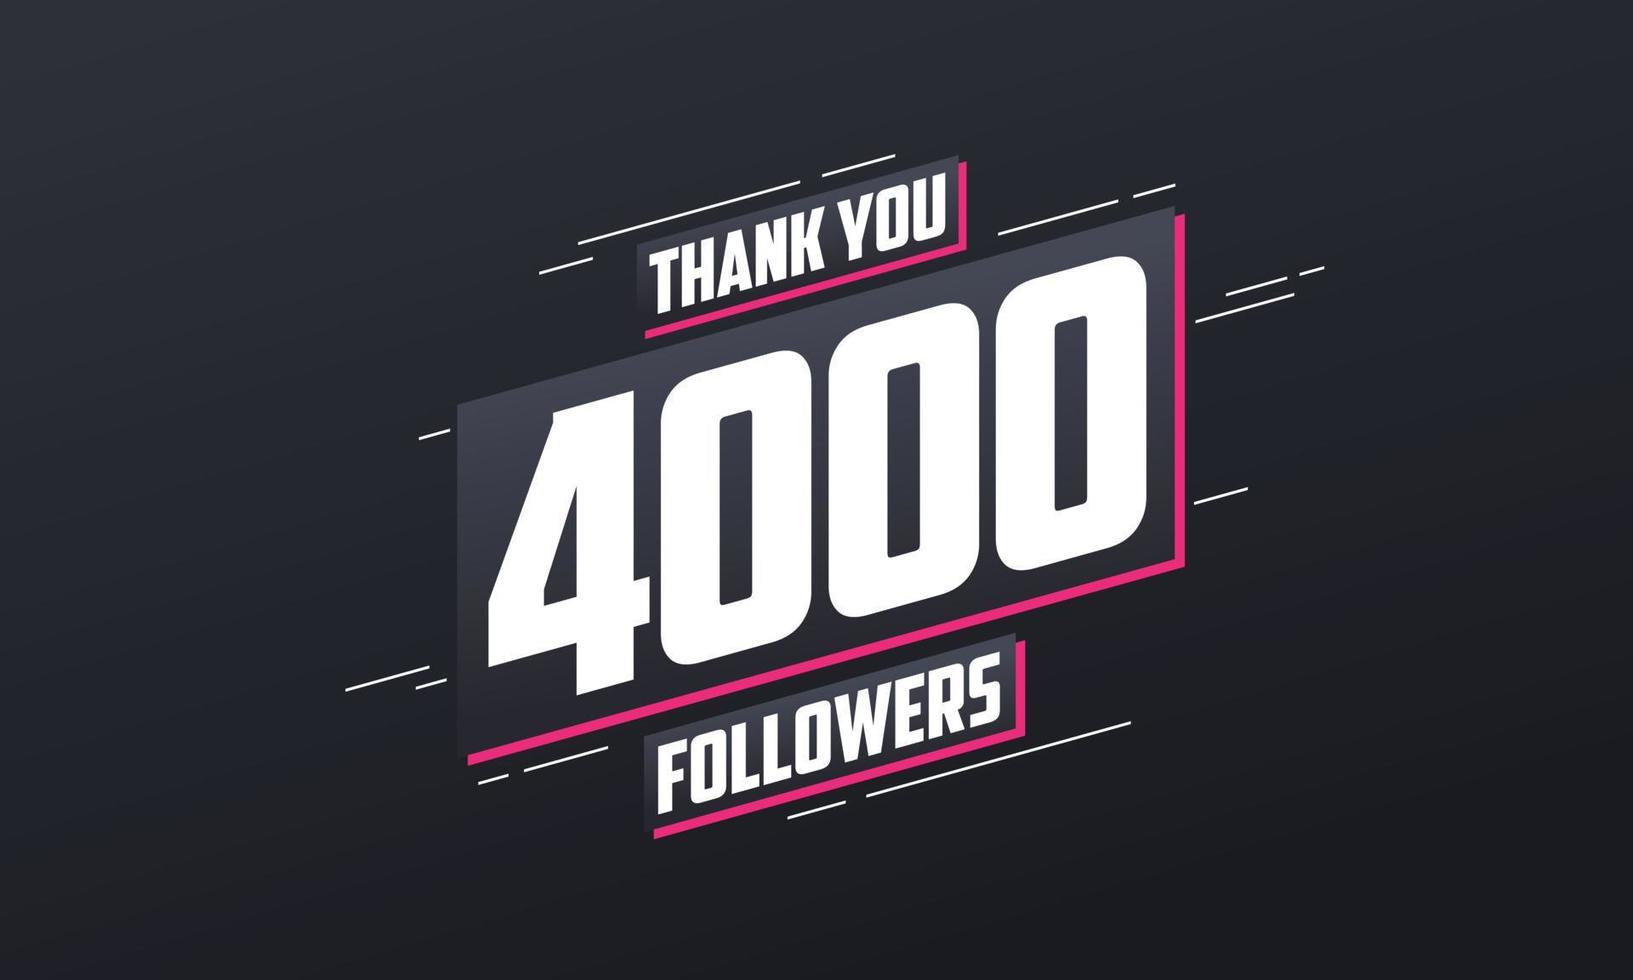 Danke 4000 Follower, Grußkartenvorlage für soziale Netzwerke. vektor